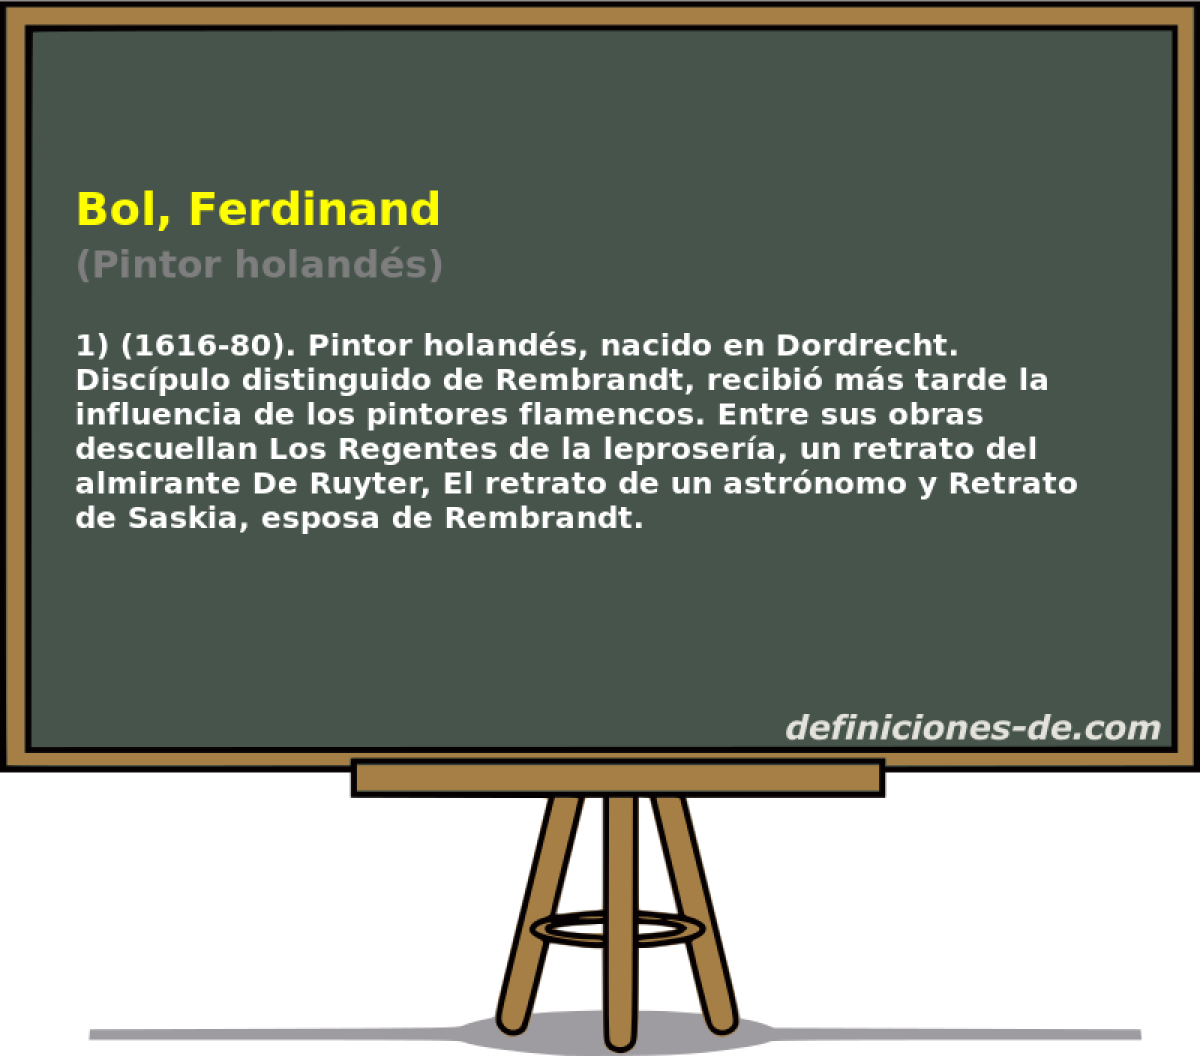 Bol, Ferdinand (Pintor holands)